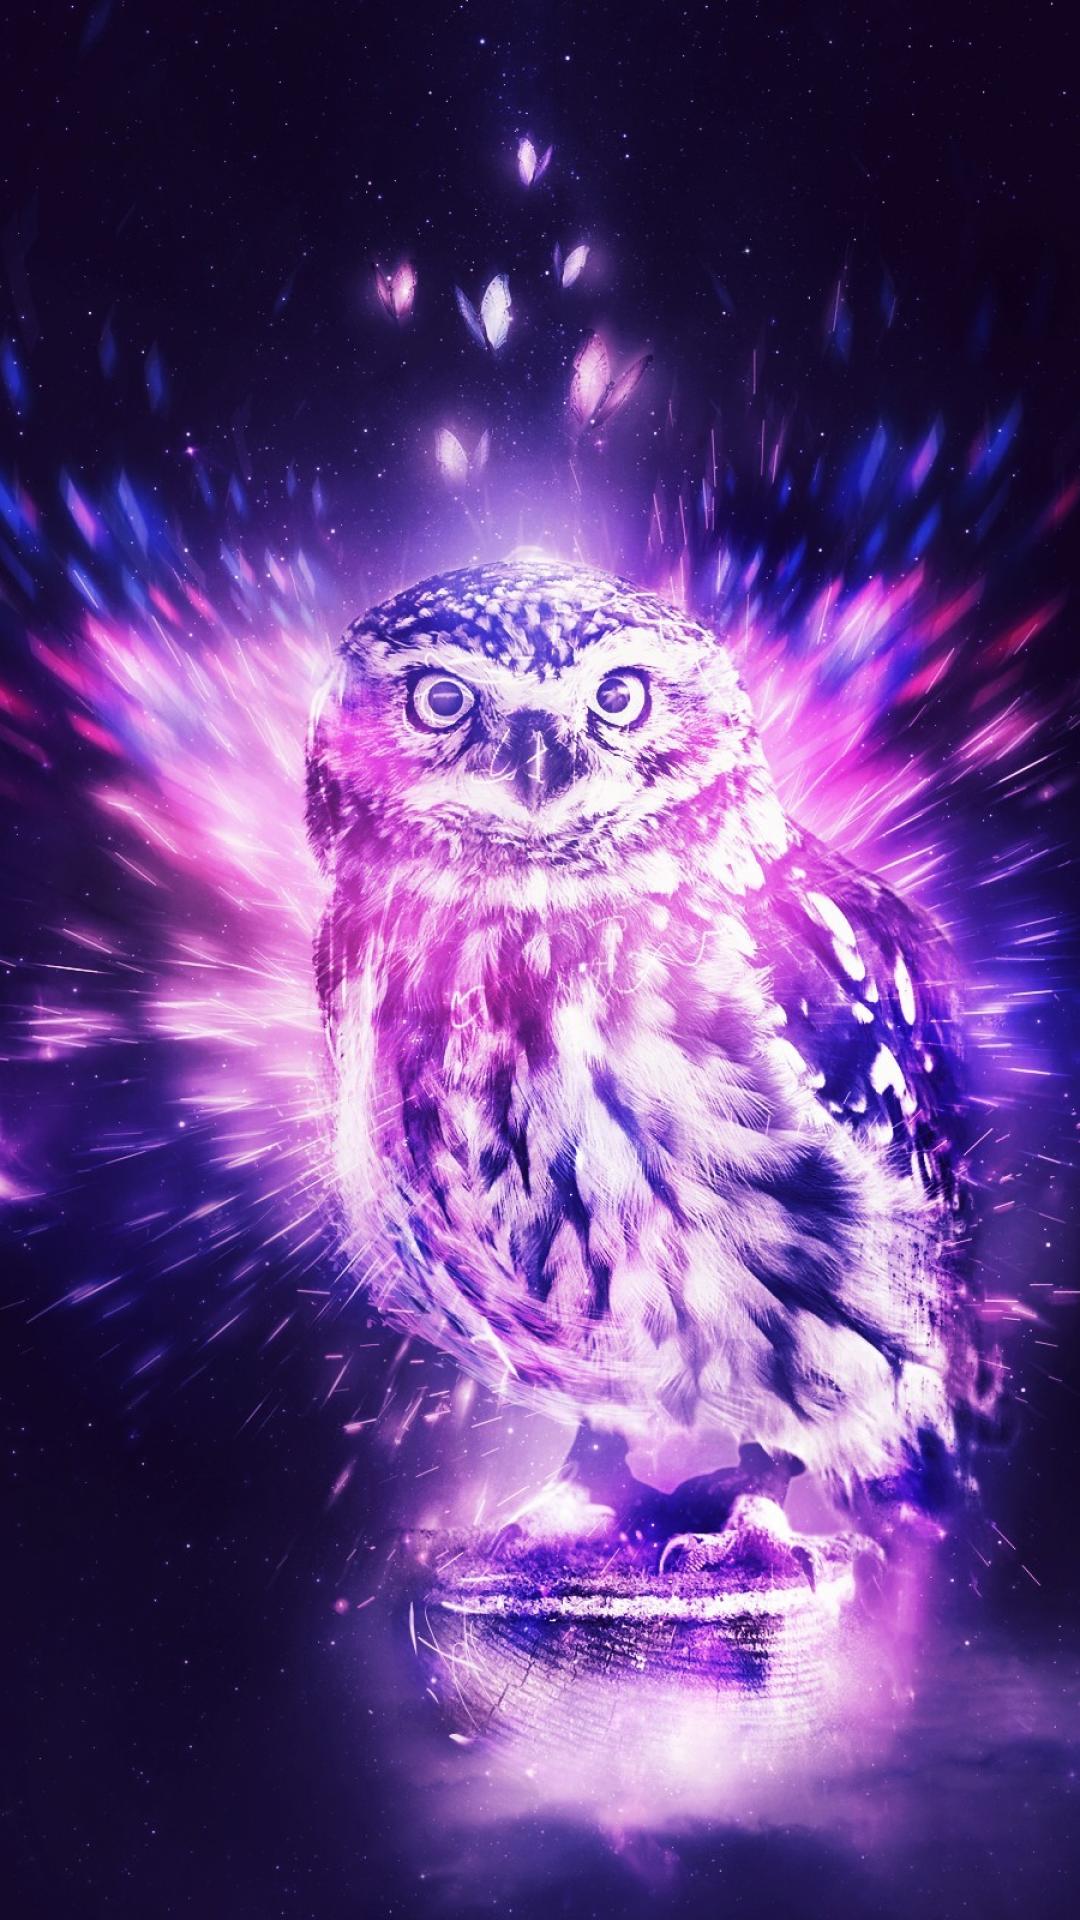 Galaxy Owl Wallpaper Free Galaxy Owl Background